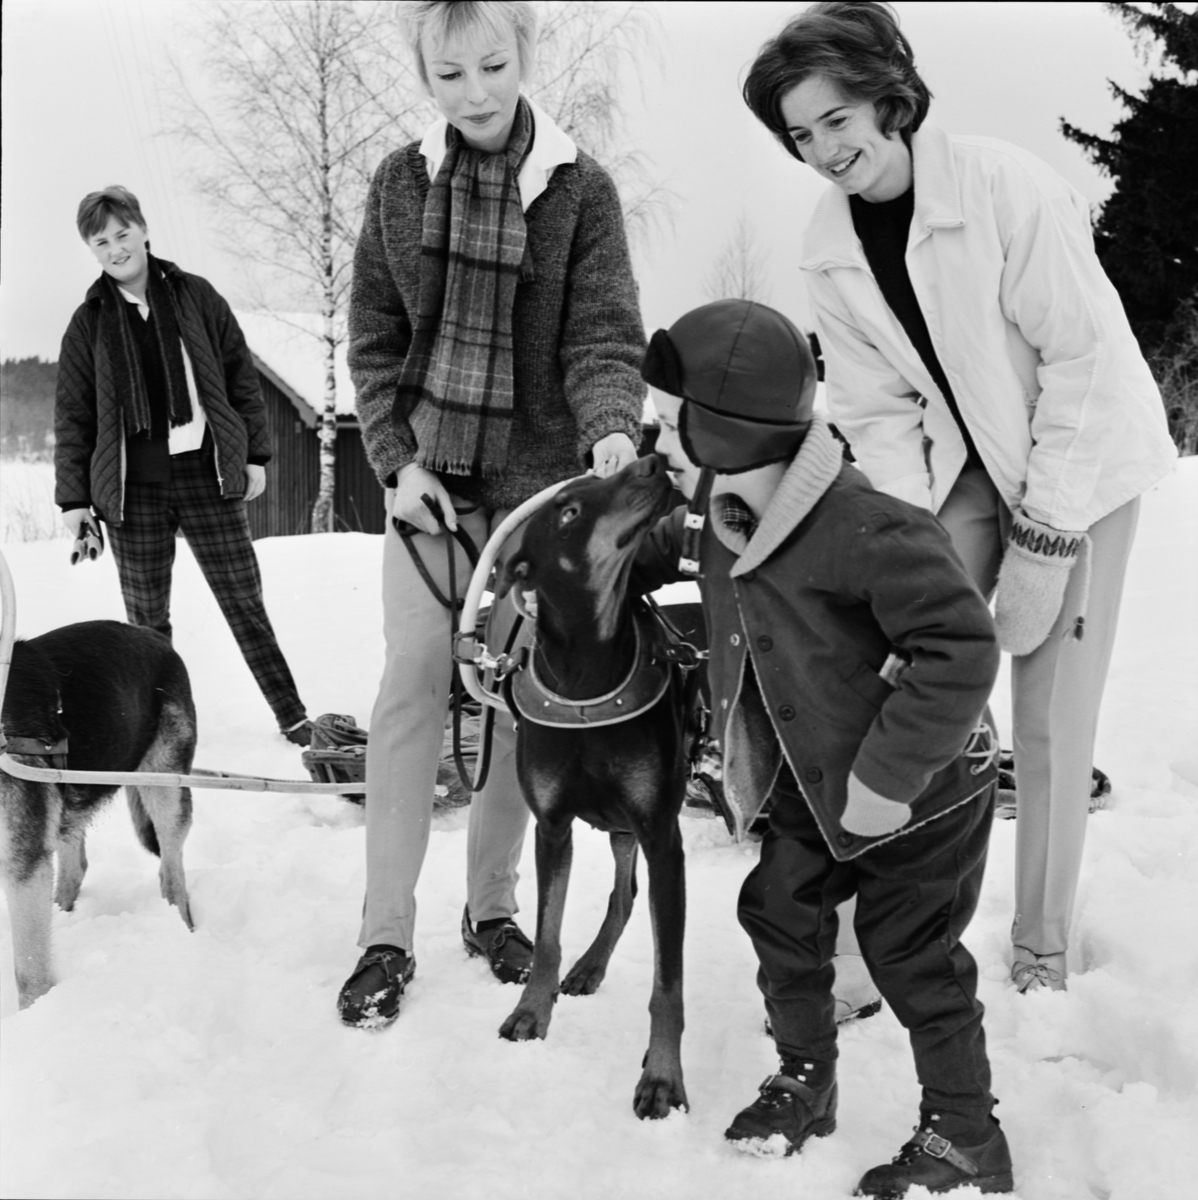 Brukshundklubben - Bernadottehemmet på pulkautflykt, Gottsunda, Uppsala, mars 1963